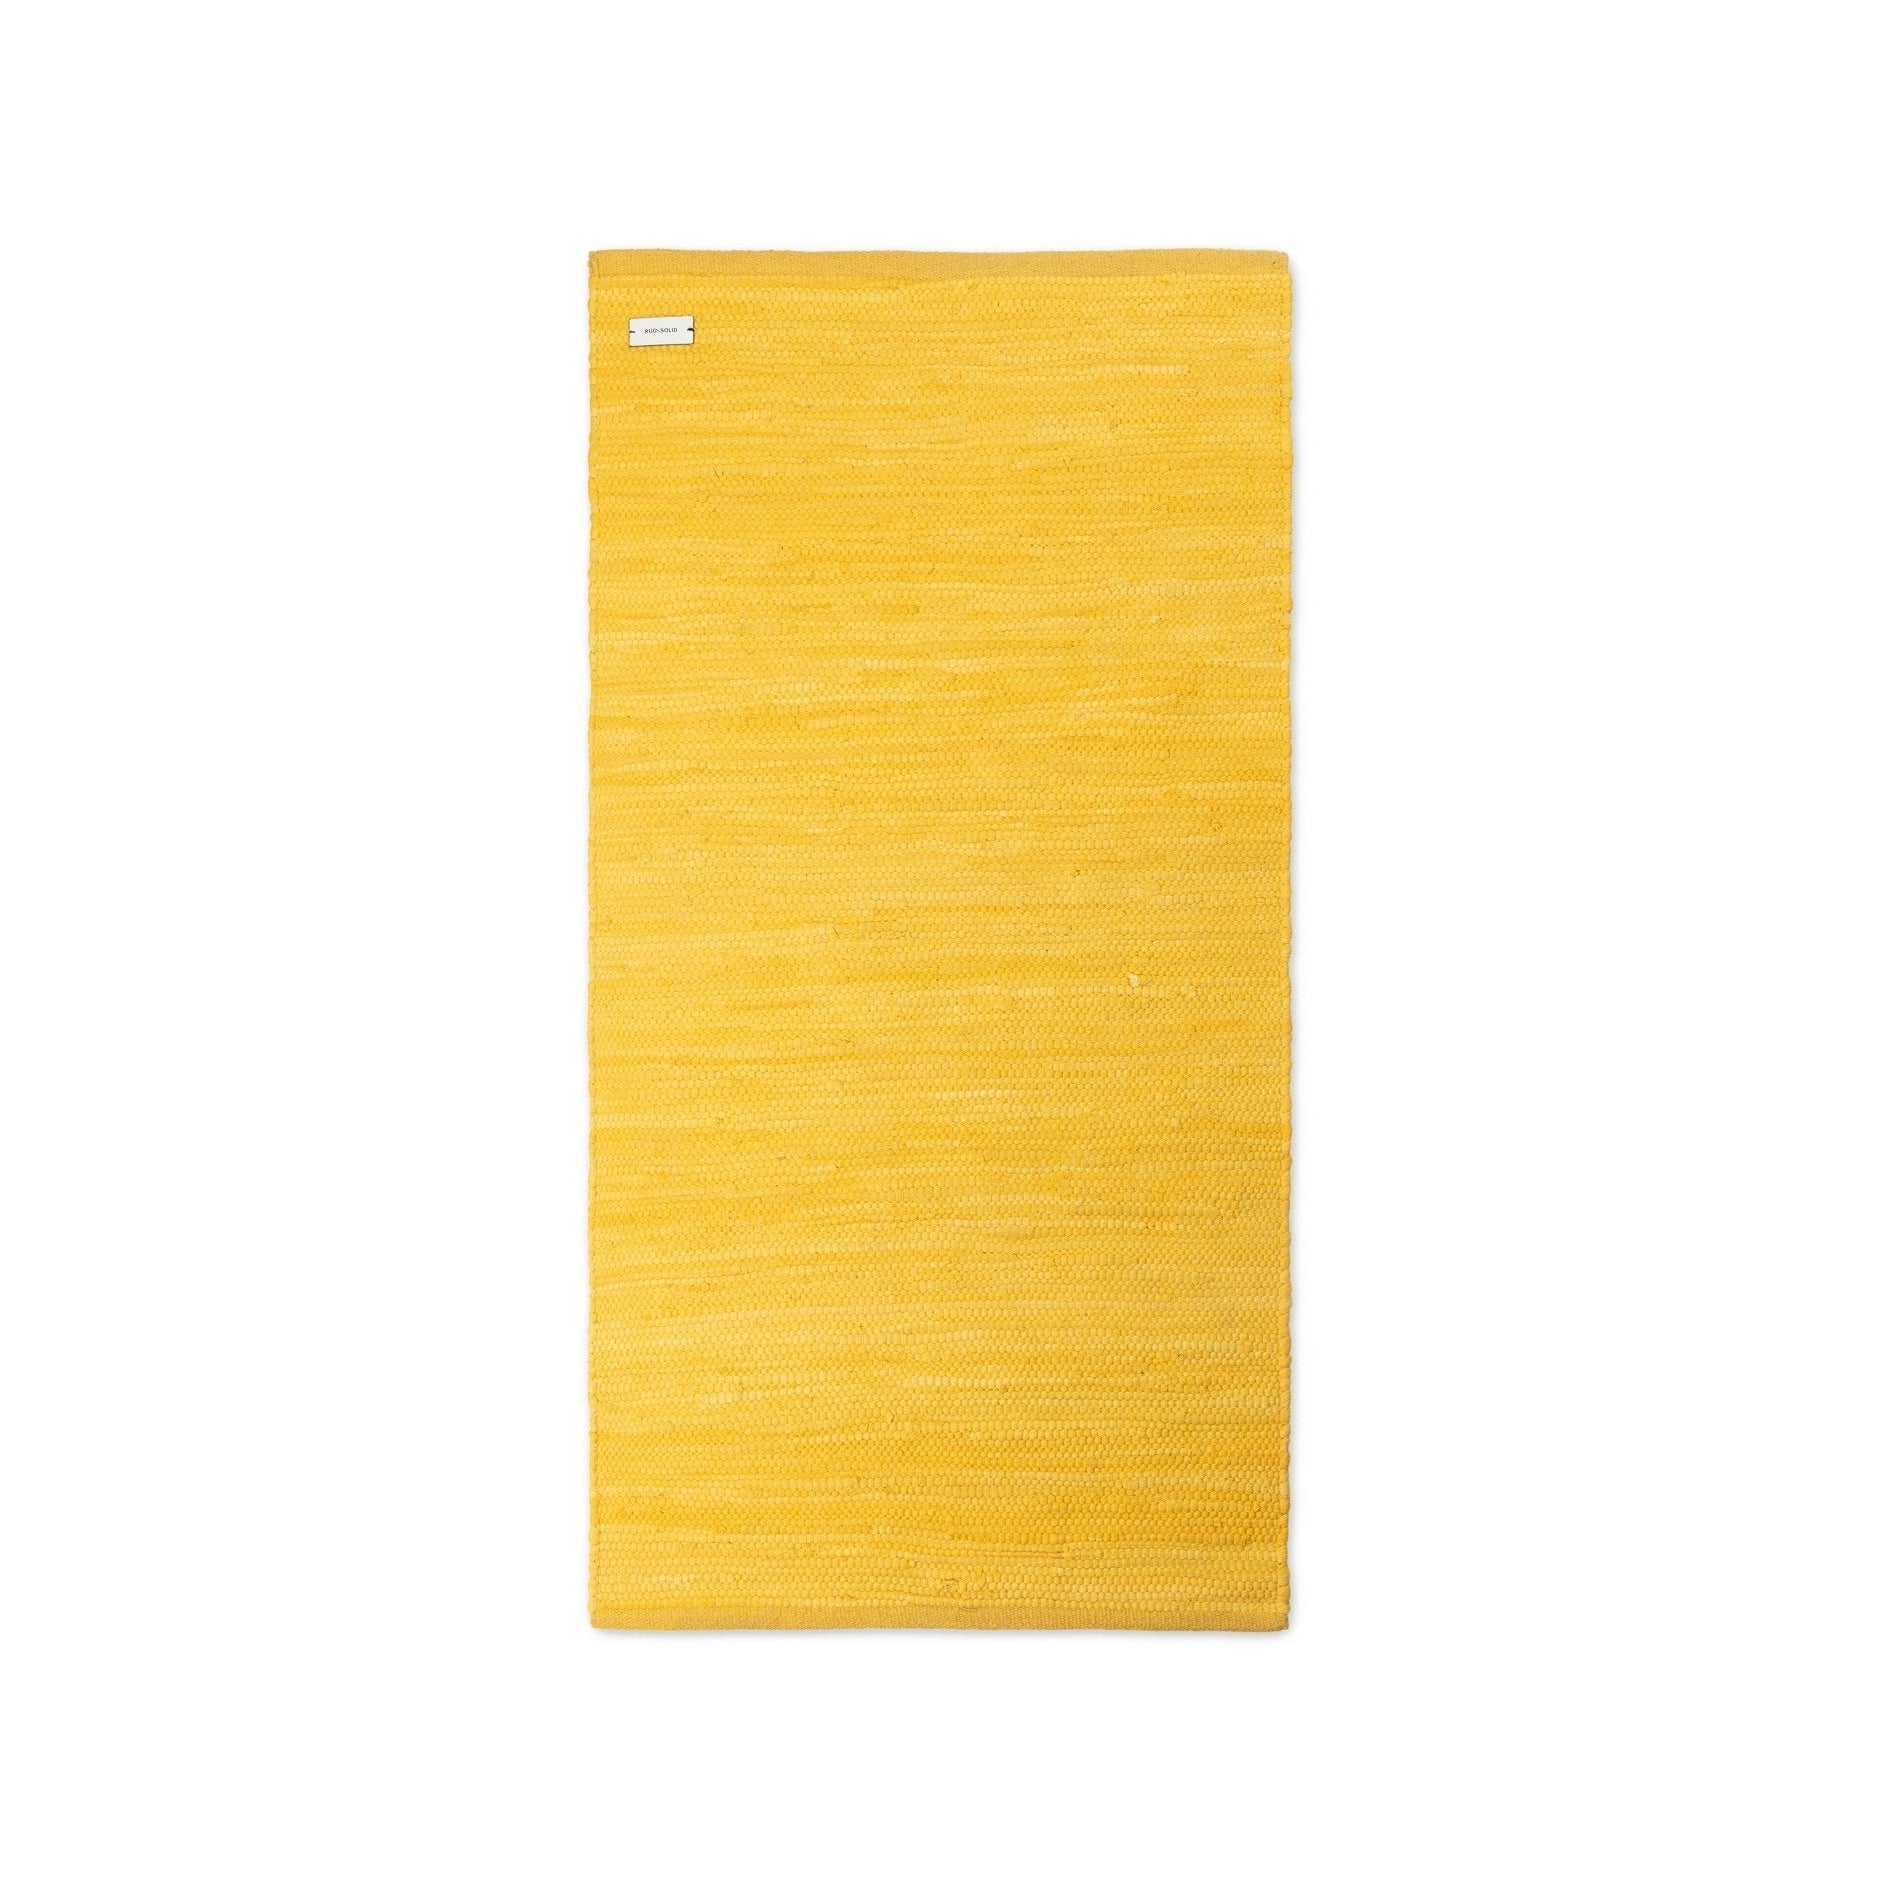 Rug Solid Bomuldtæppe regnfrakke gul, 60 x 90 cm